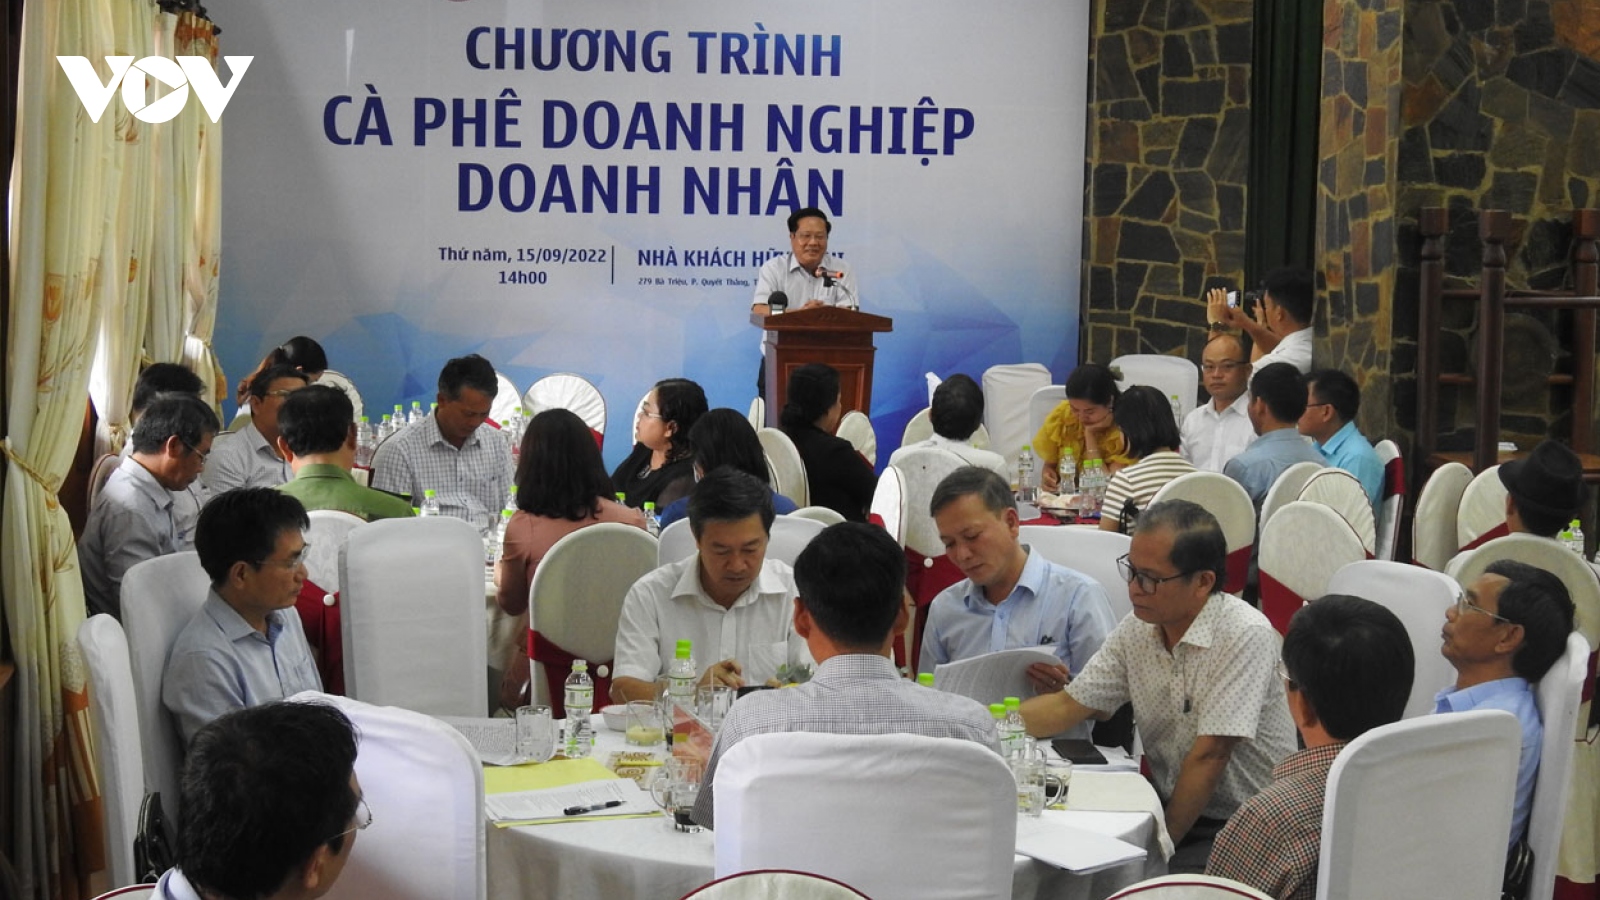 Kon Tum tổ chức Chương trình cà phê doanh nghiệp doanh nhân